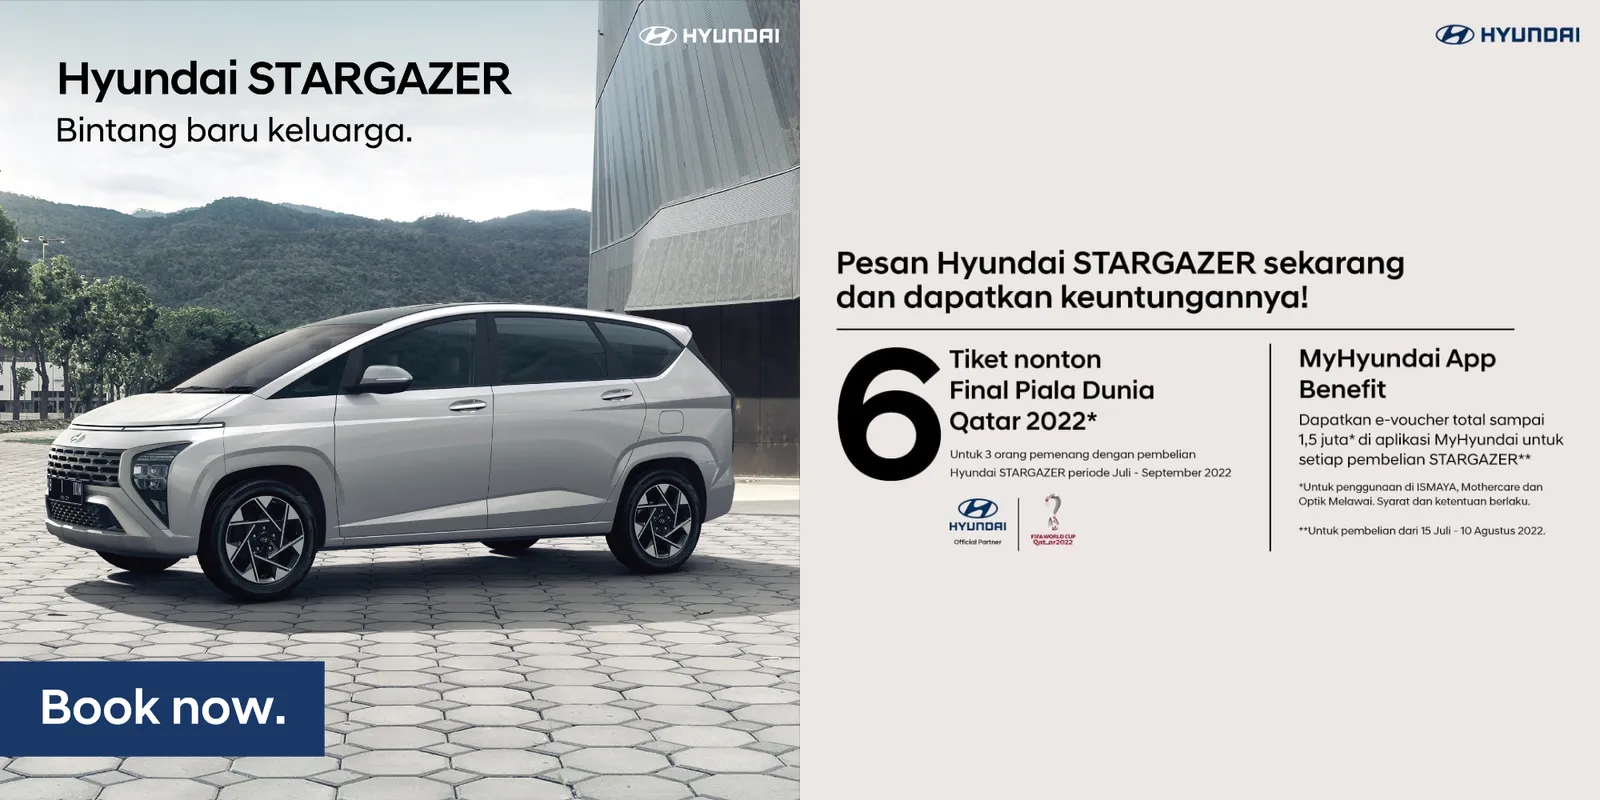 5 Alasan Kencan Bareng Pacar Lebih Nyaman Pakai Hyundai STARGAZER